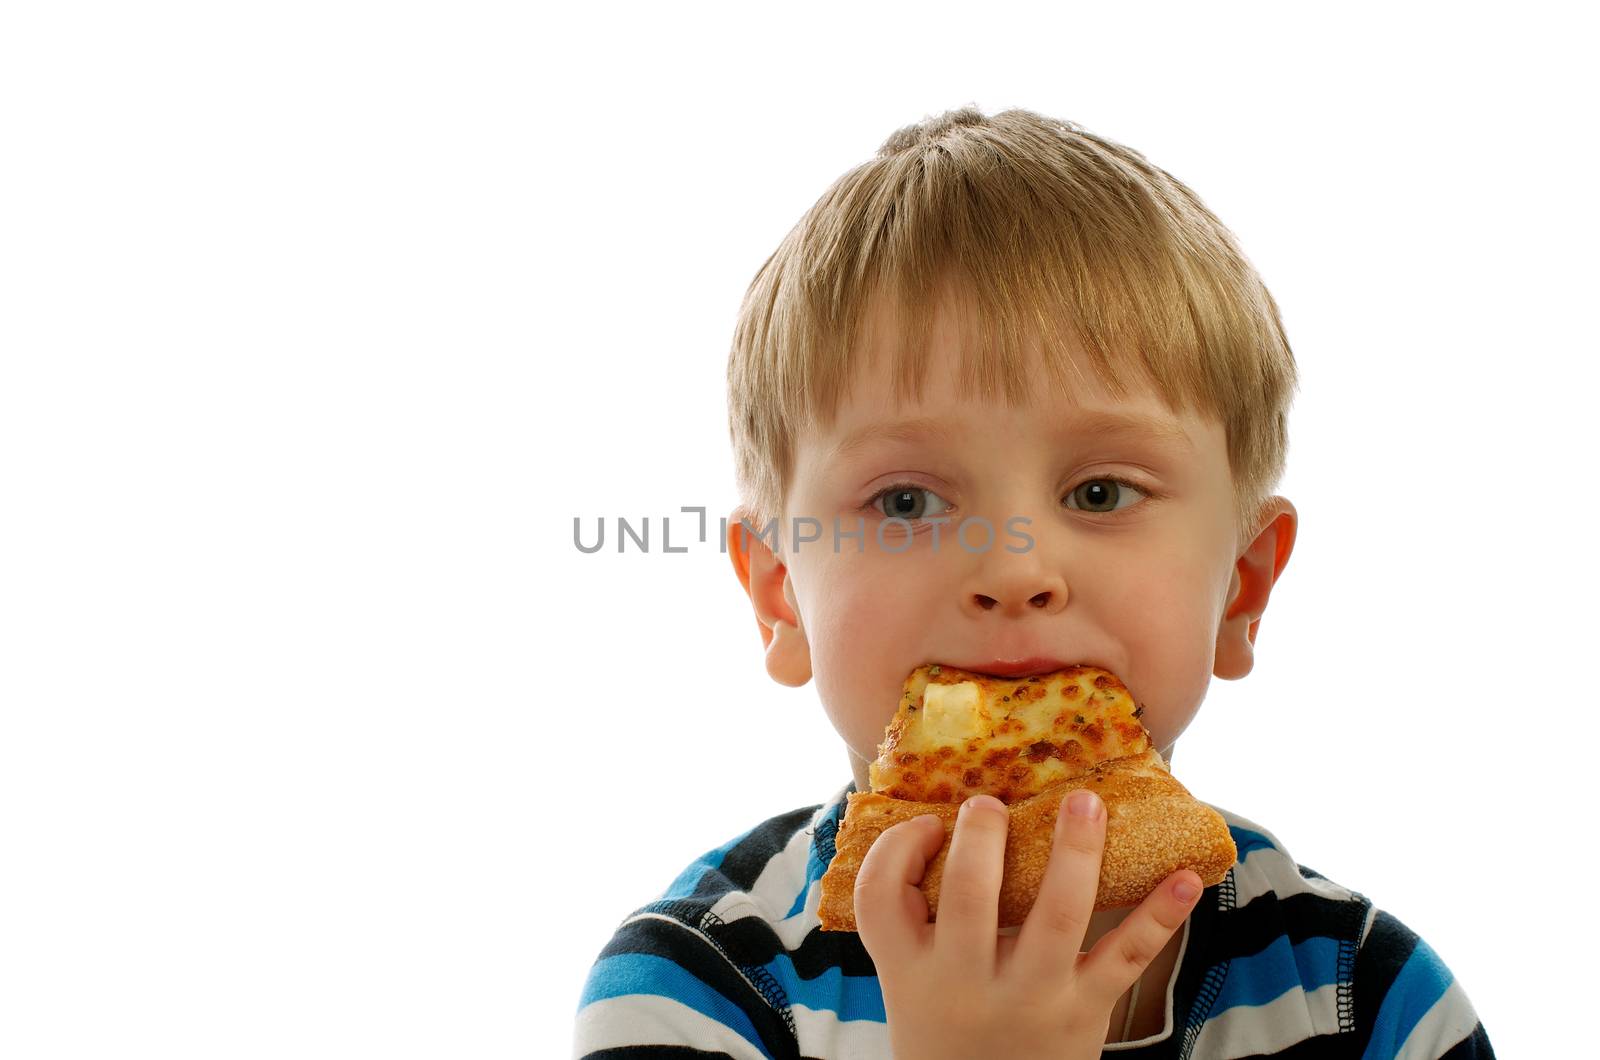 Little Boy Eating Pizza by zhekos